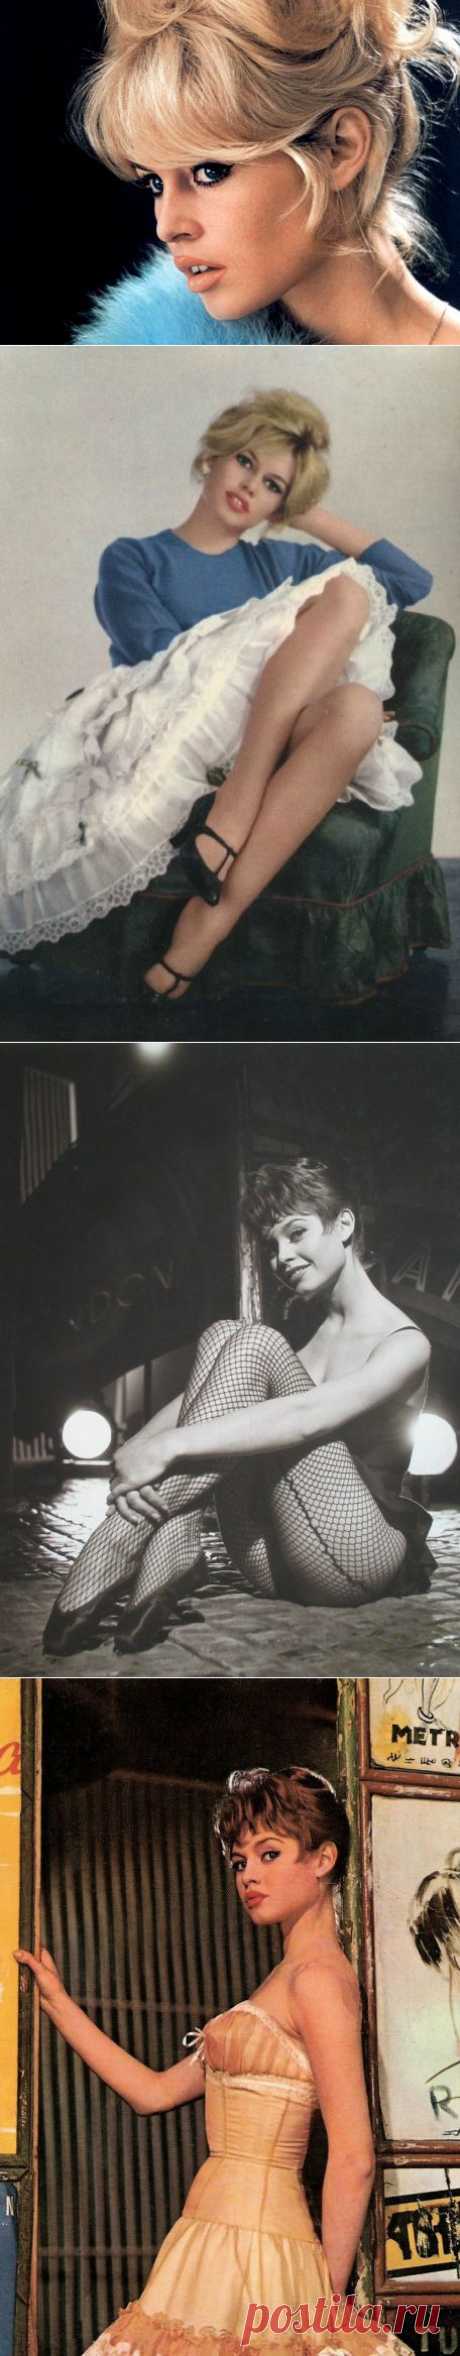 Брижит Бардо (Brigitte Bardot) | Life on Photo